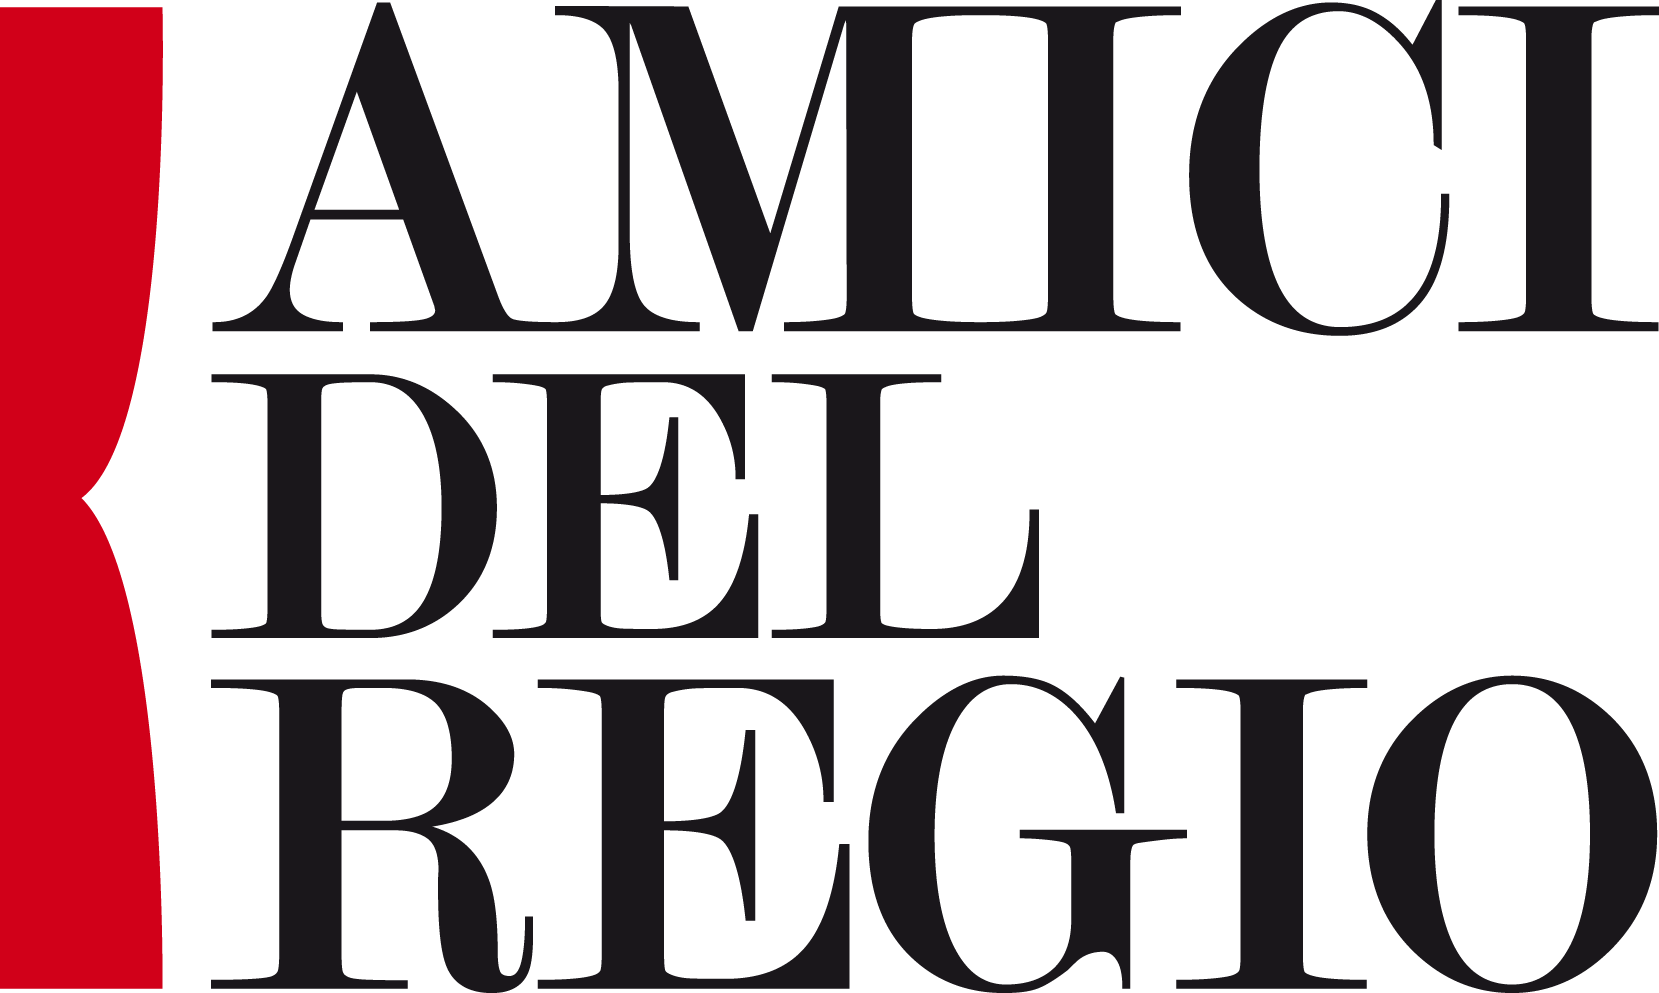 Logo Amici del Regio